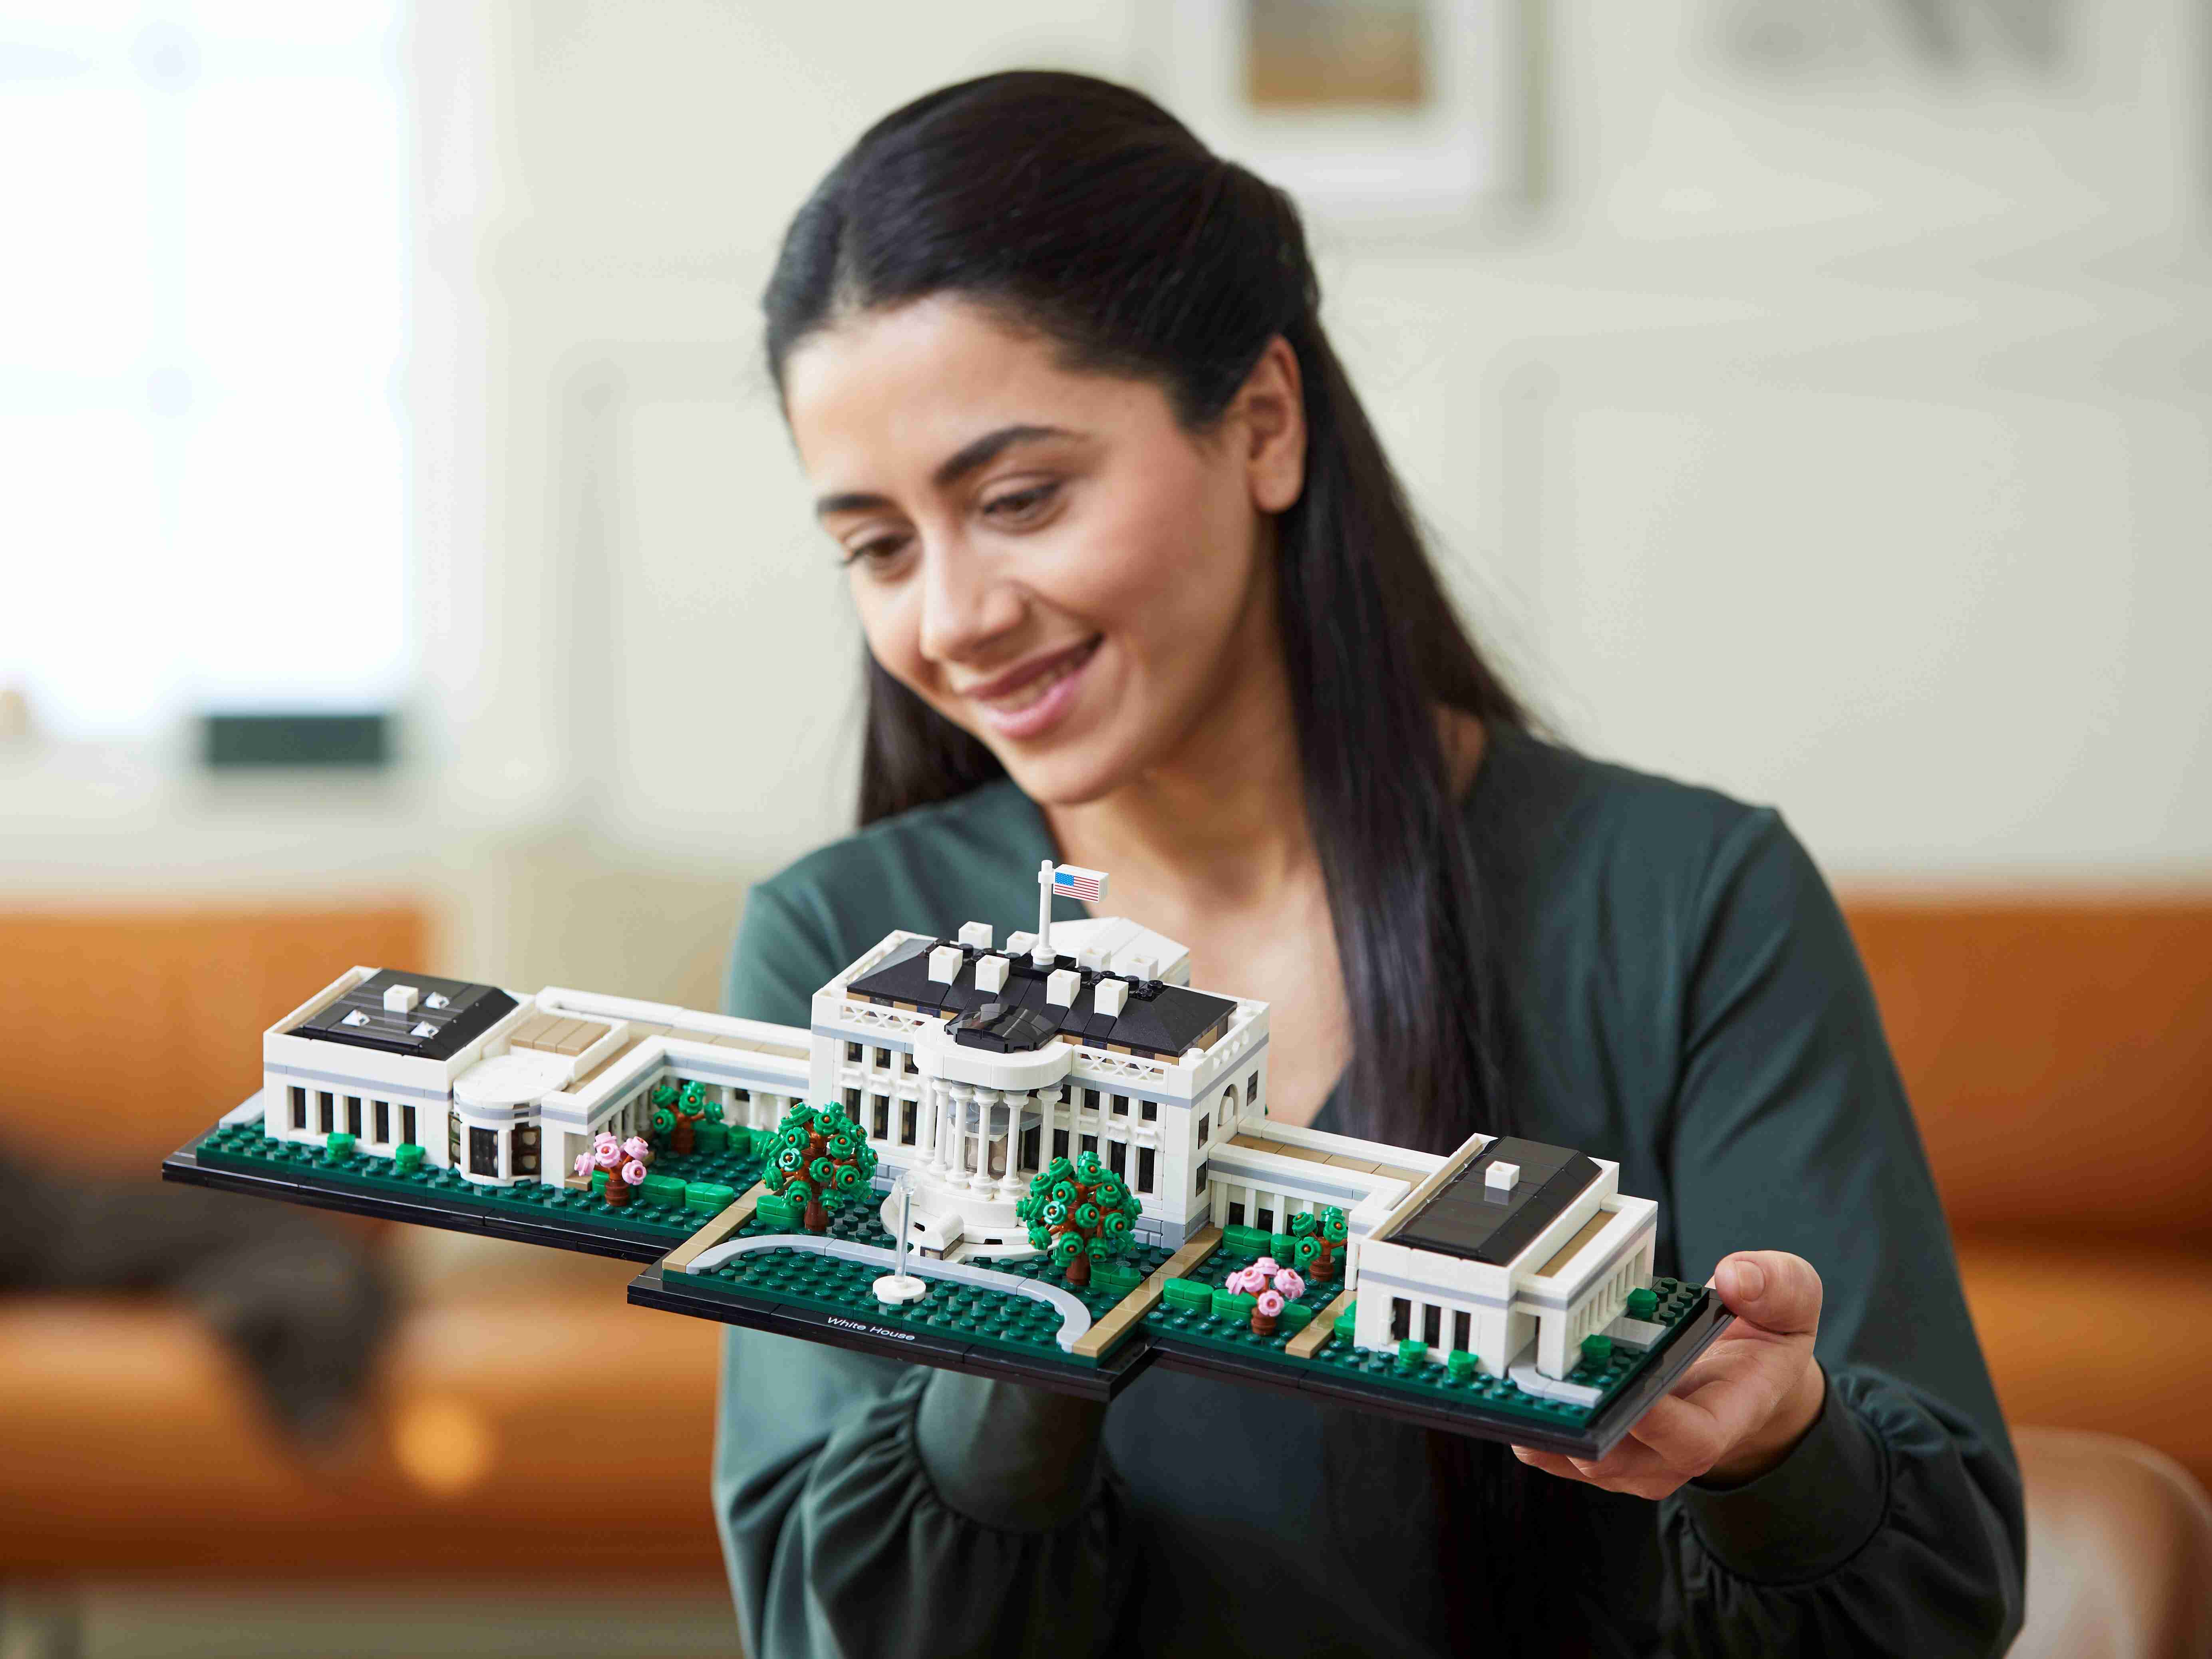 LEGO 21054 Architecture Das Weiße Haus, Modellbaussatz für Erwachsene